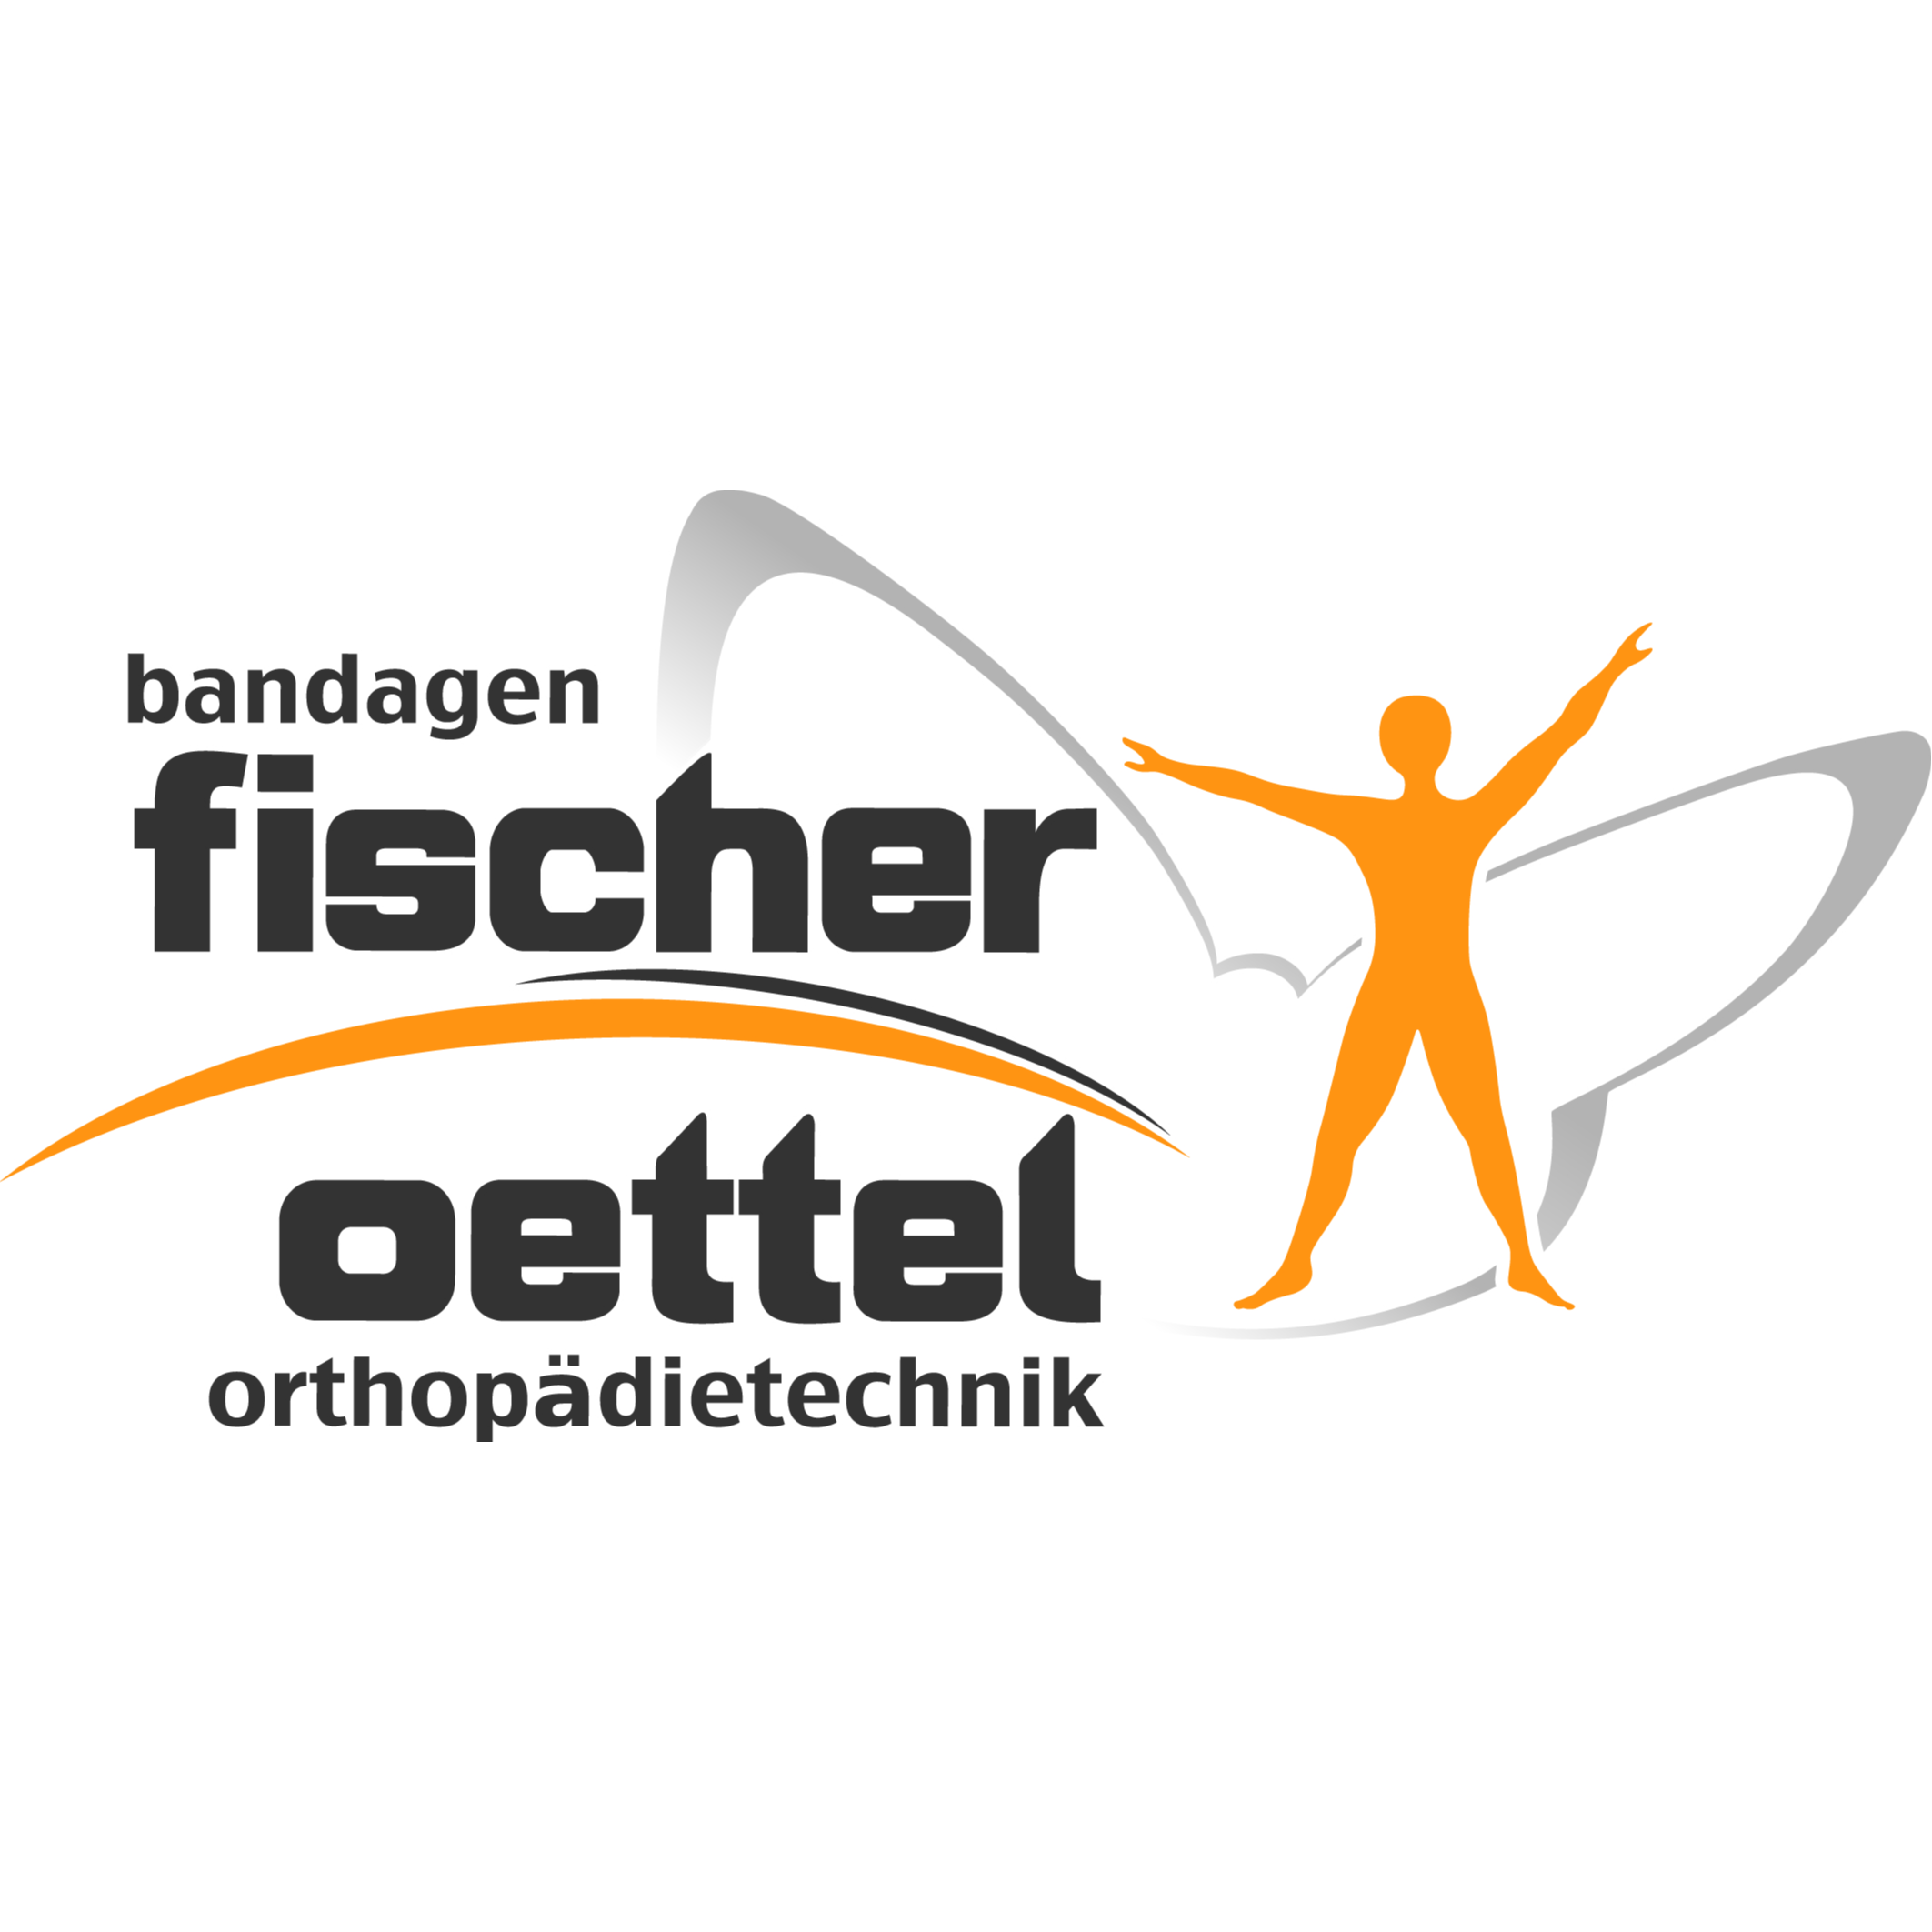 Bandagen Fischer Oettel Orthopädietechnik in Oelsnitz im Vogtland - Logo